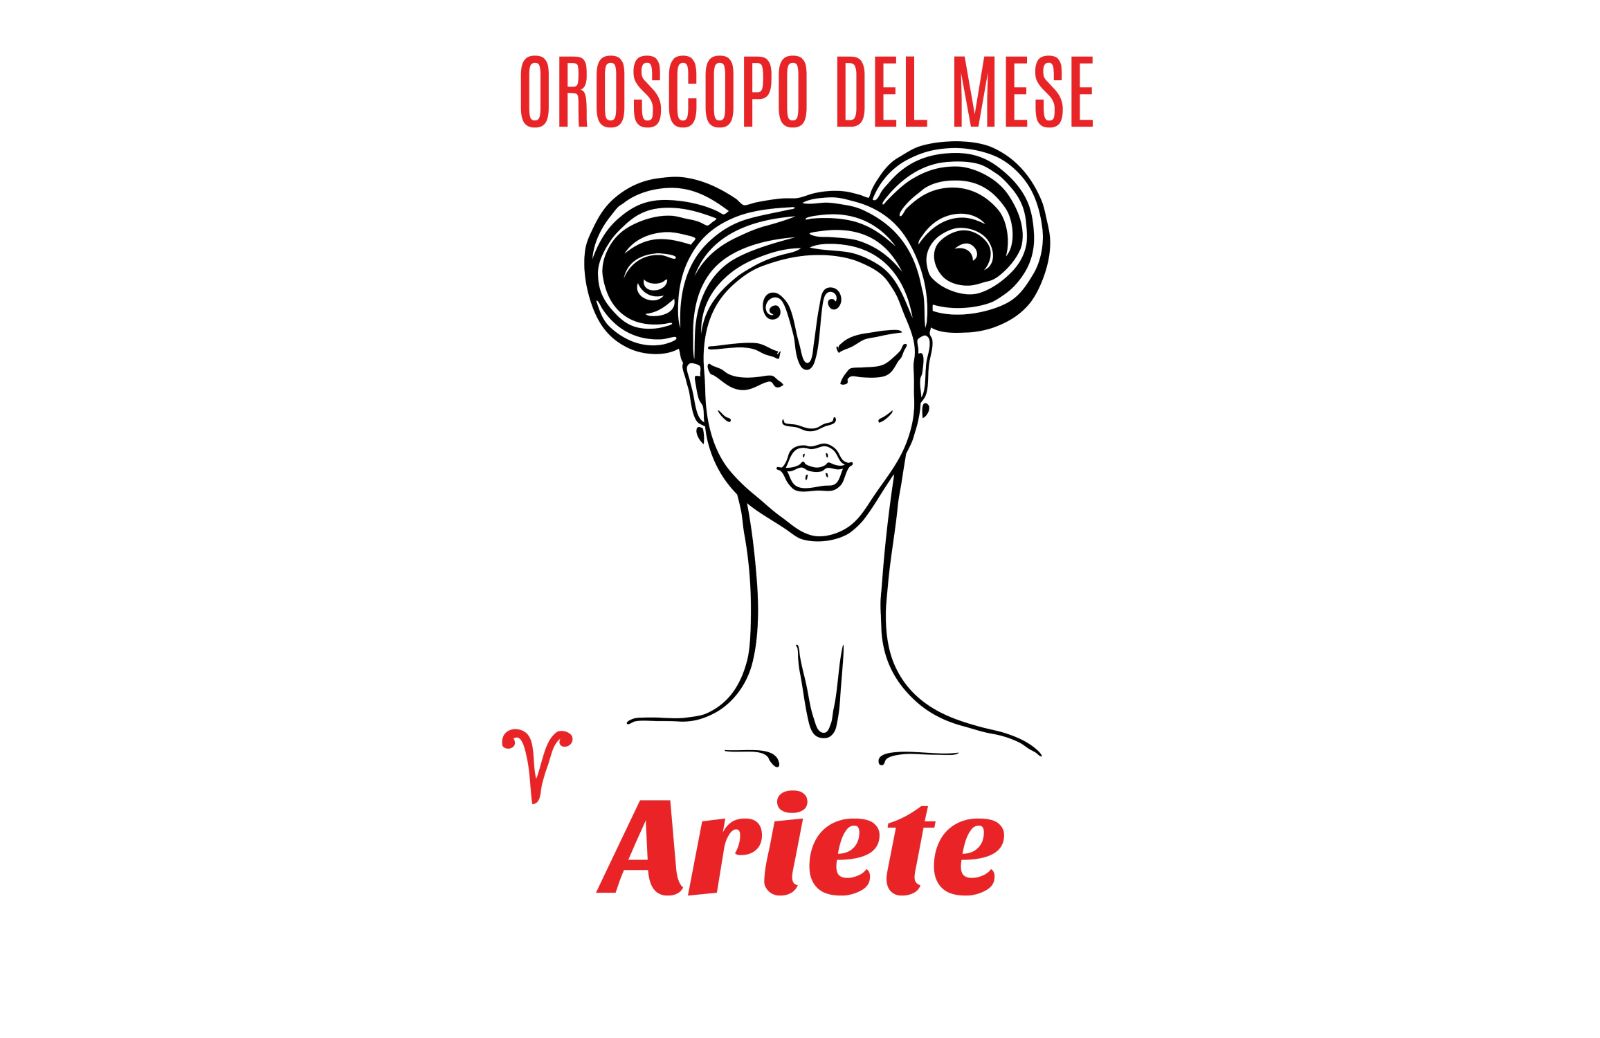 Oroscopo del mese: Ariete - giugno 2018